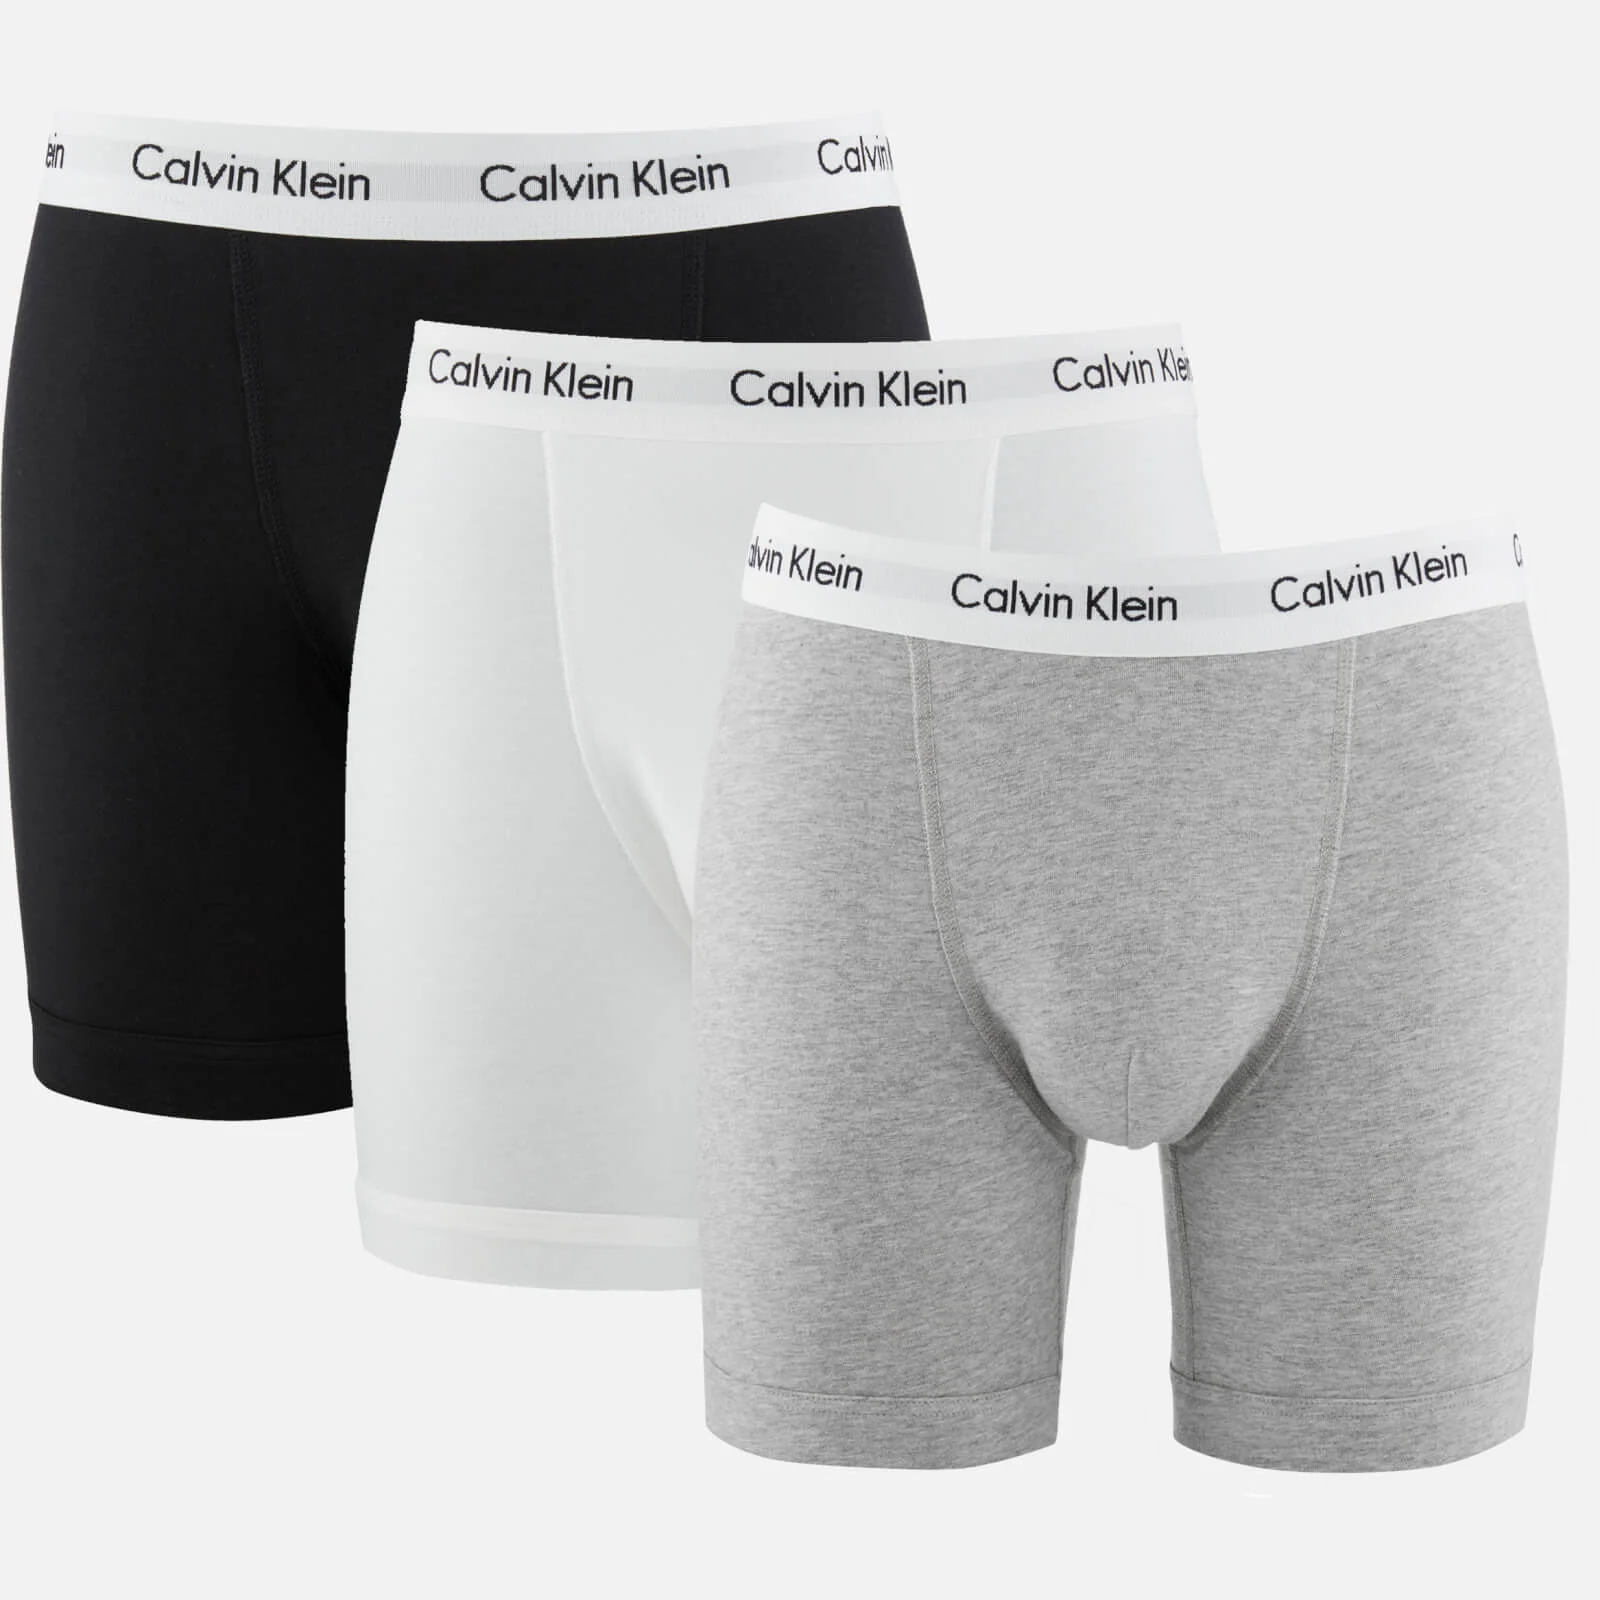 Calvin Klein Men's 3 Pack Boxer Briefs - Black/White/Grey Heather Image 1